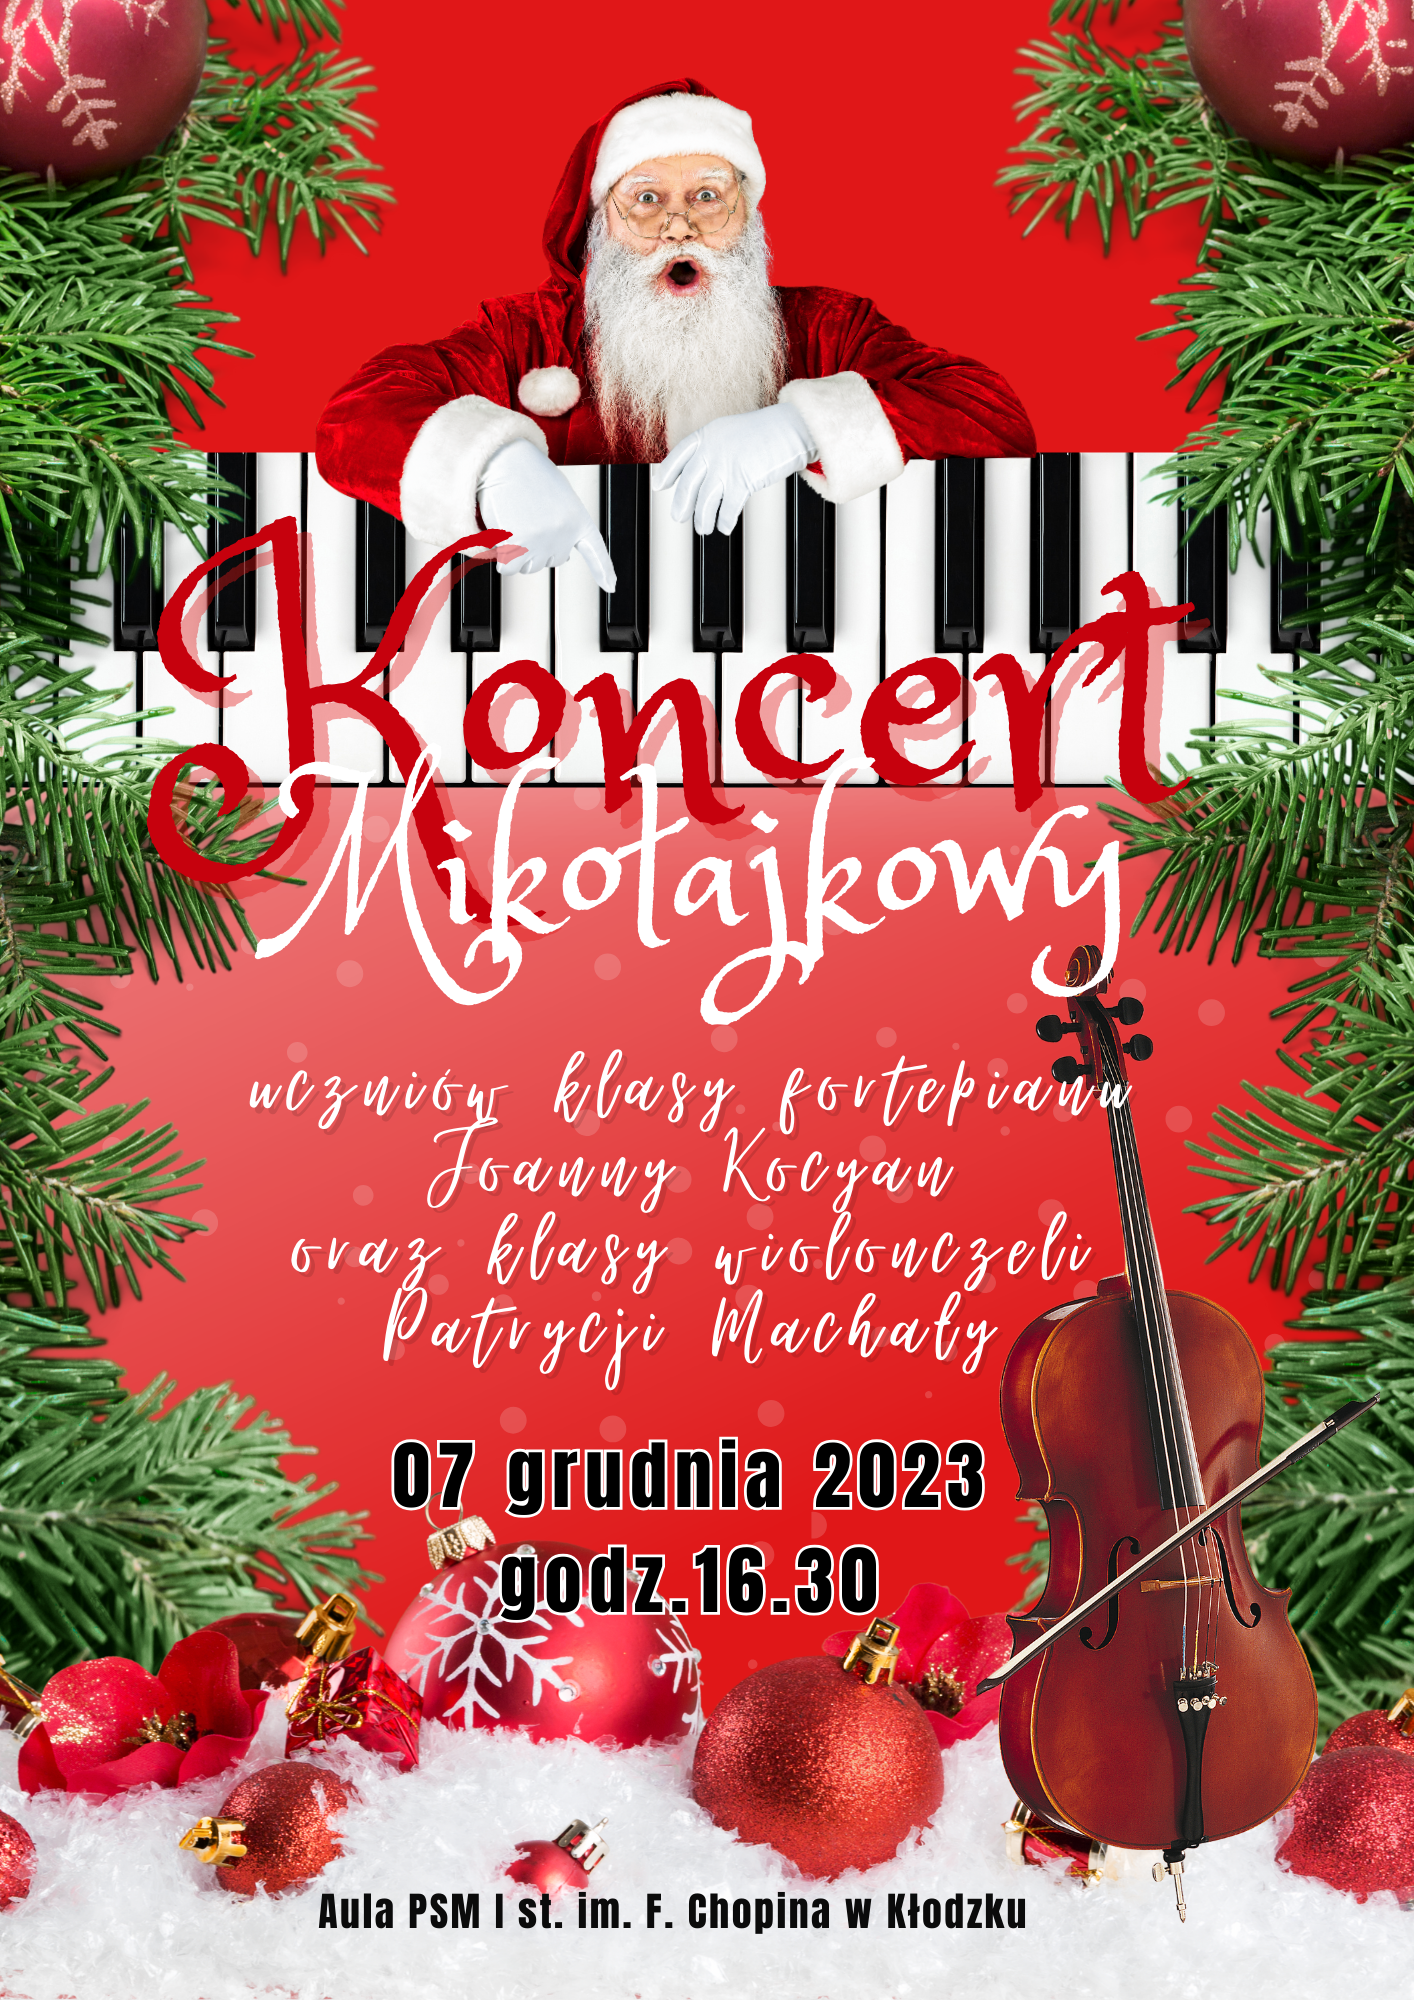 Plakat na czerwonym tle z grafiką Mikołaja oraz klawiszy fortepiany z szczegółową informacją tekstową dot. koncertu mikołajkowego, który odbędzie się 07 grudnia 2023